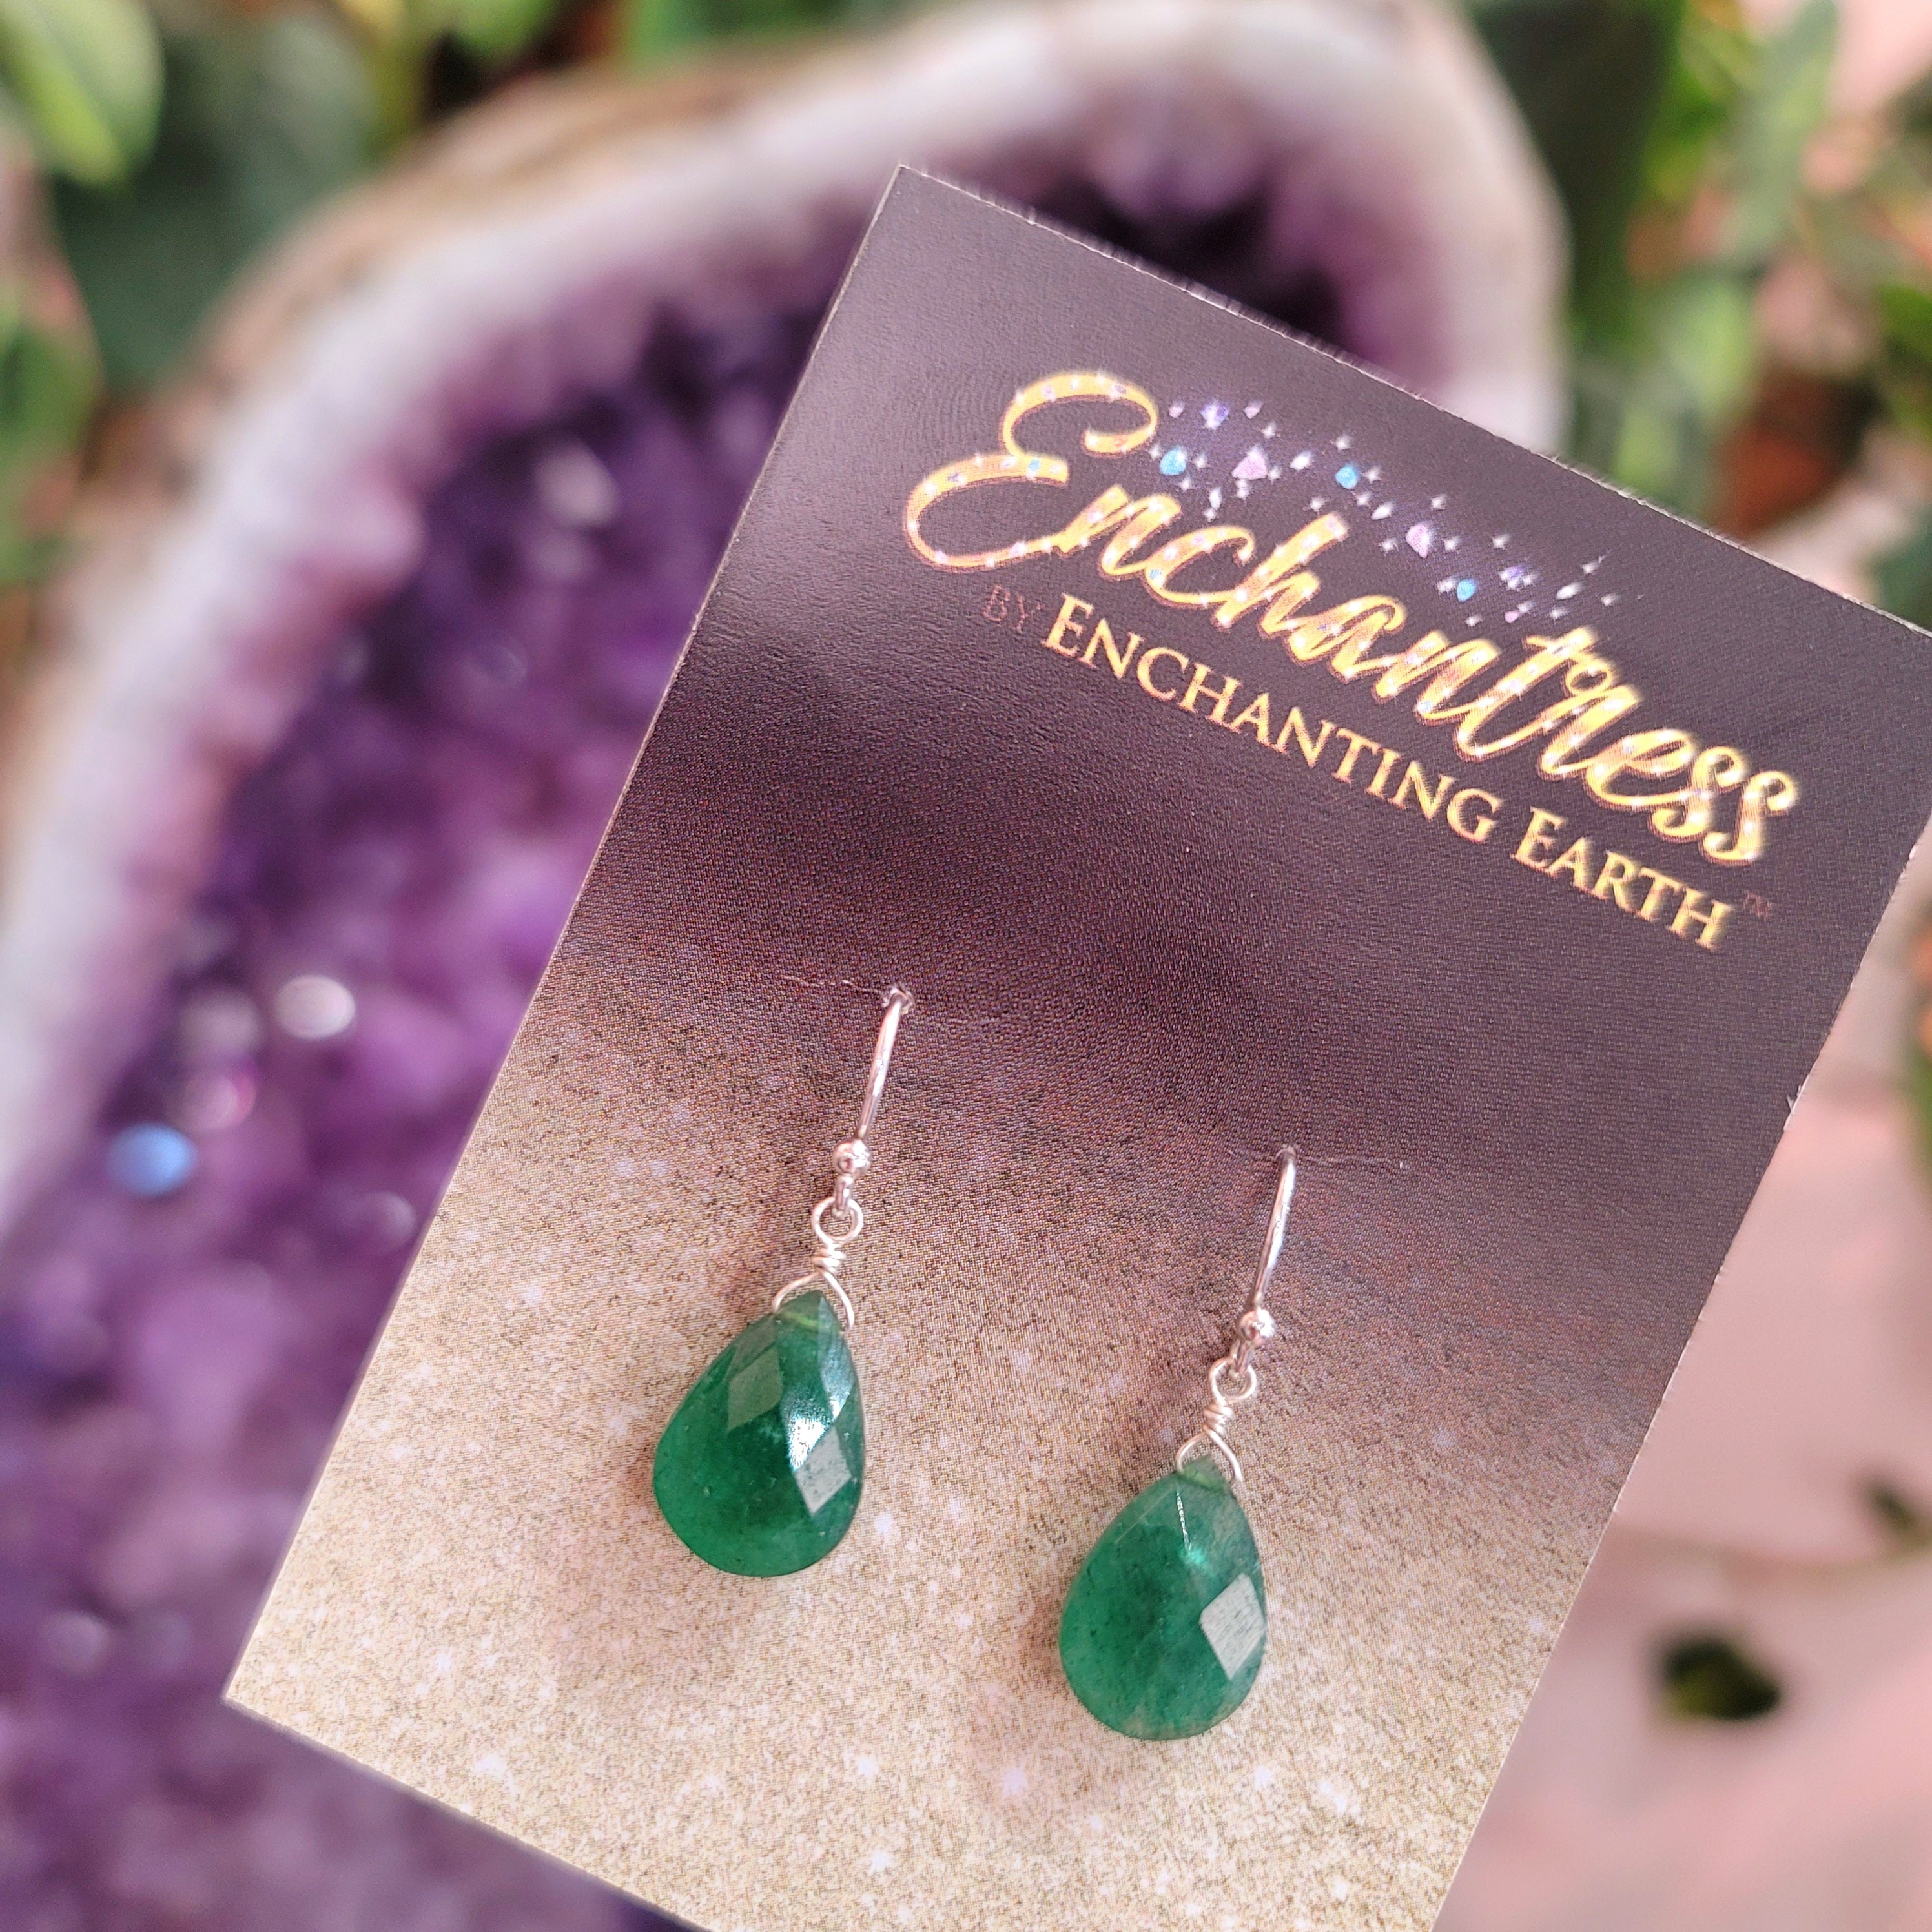 Green Aventurine Earrings for Good Luck and Prosperity